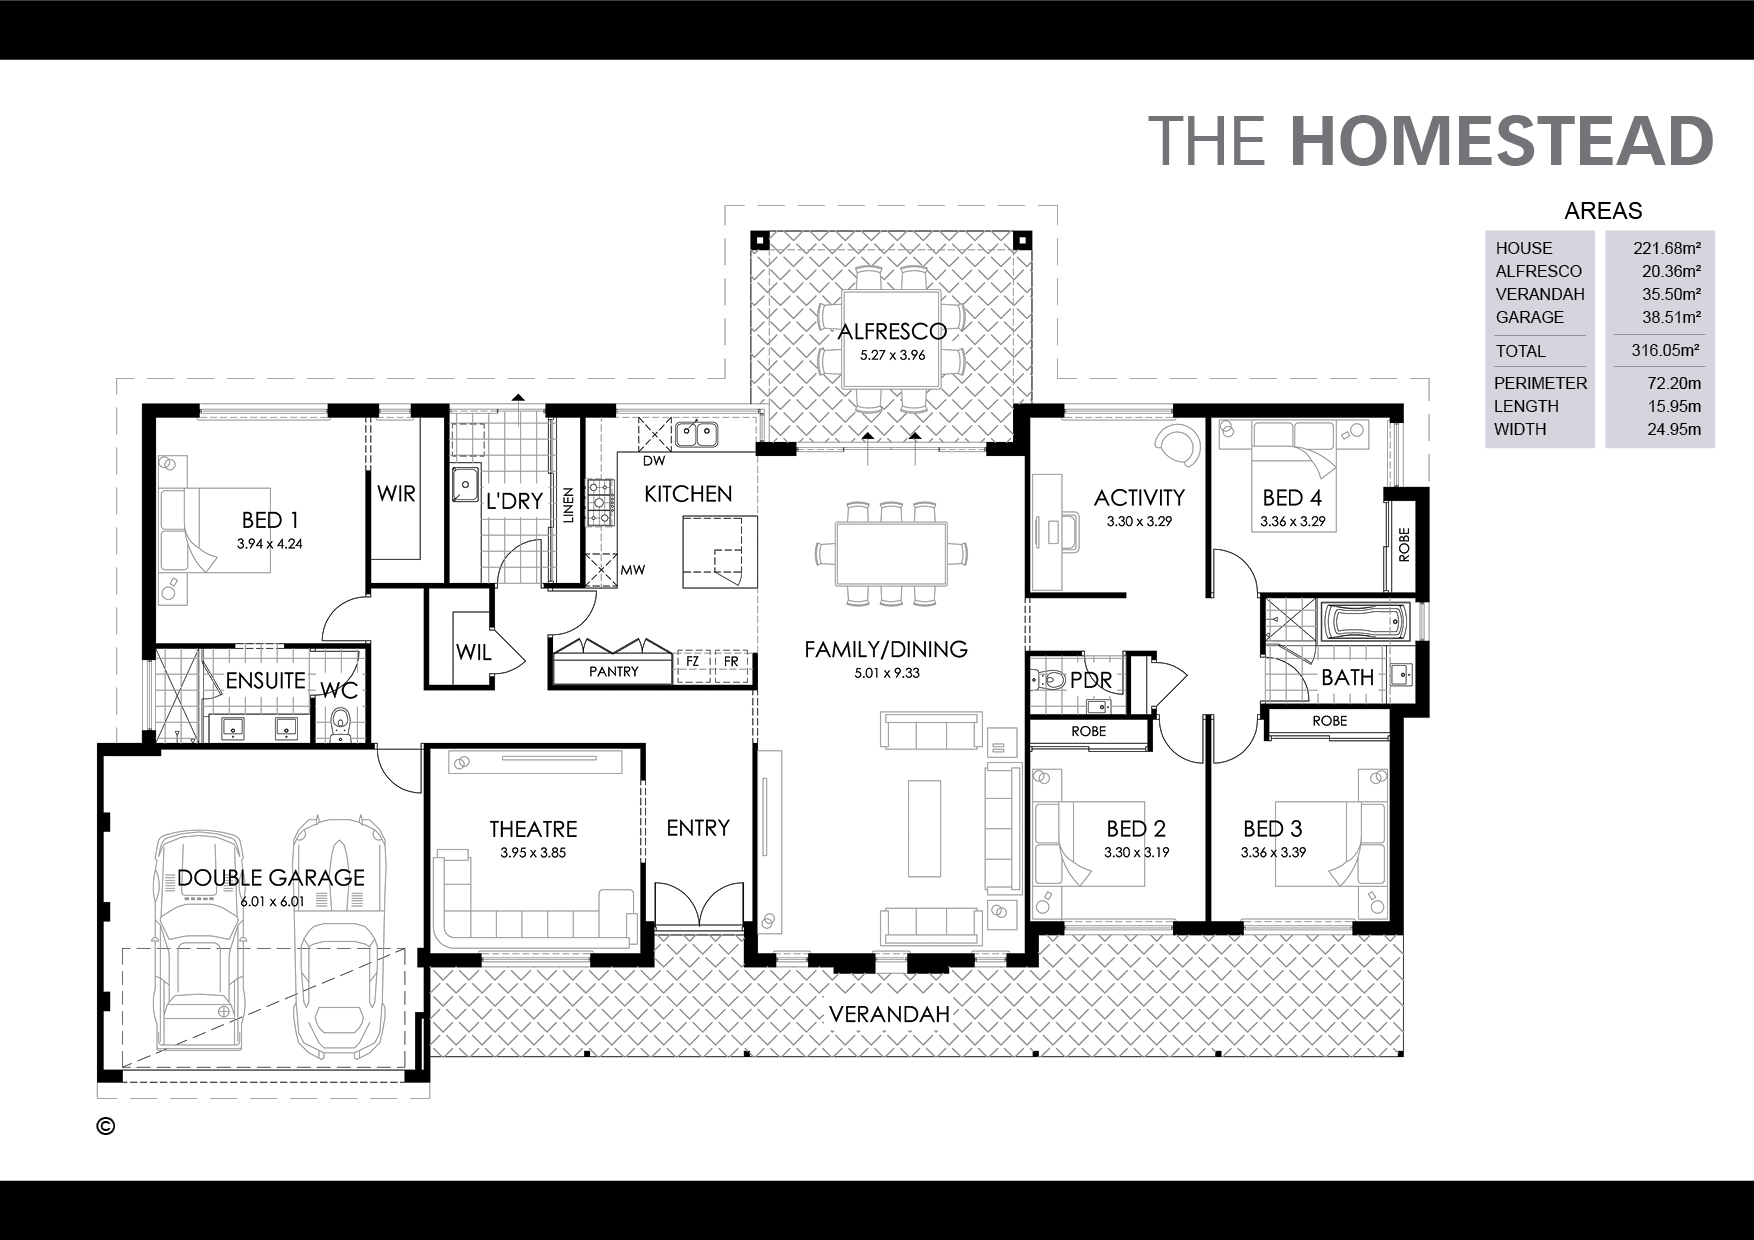 The Homestead Floorplan